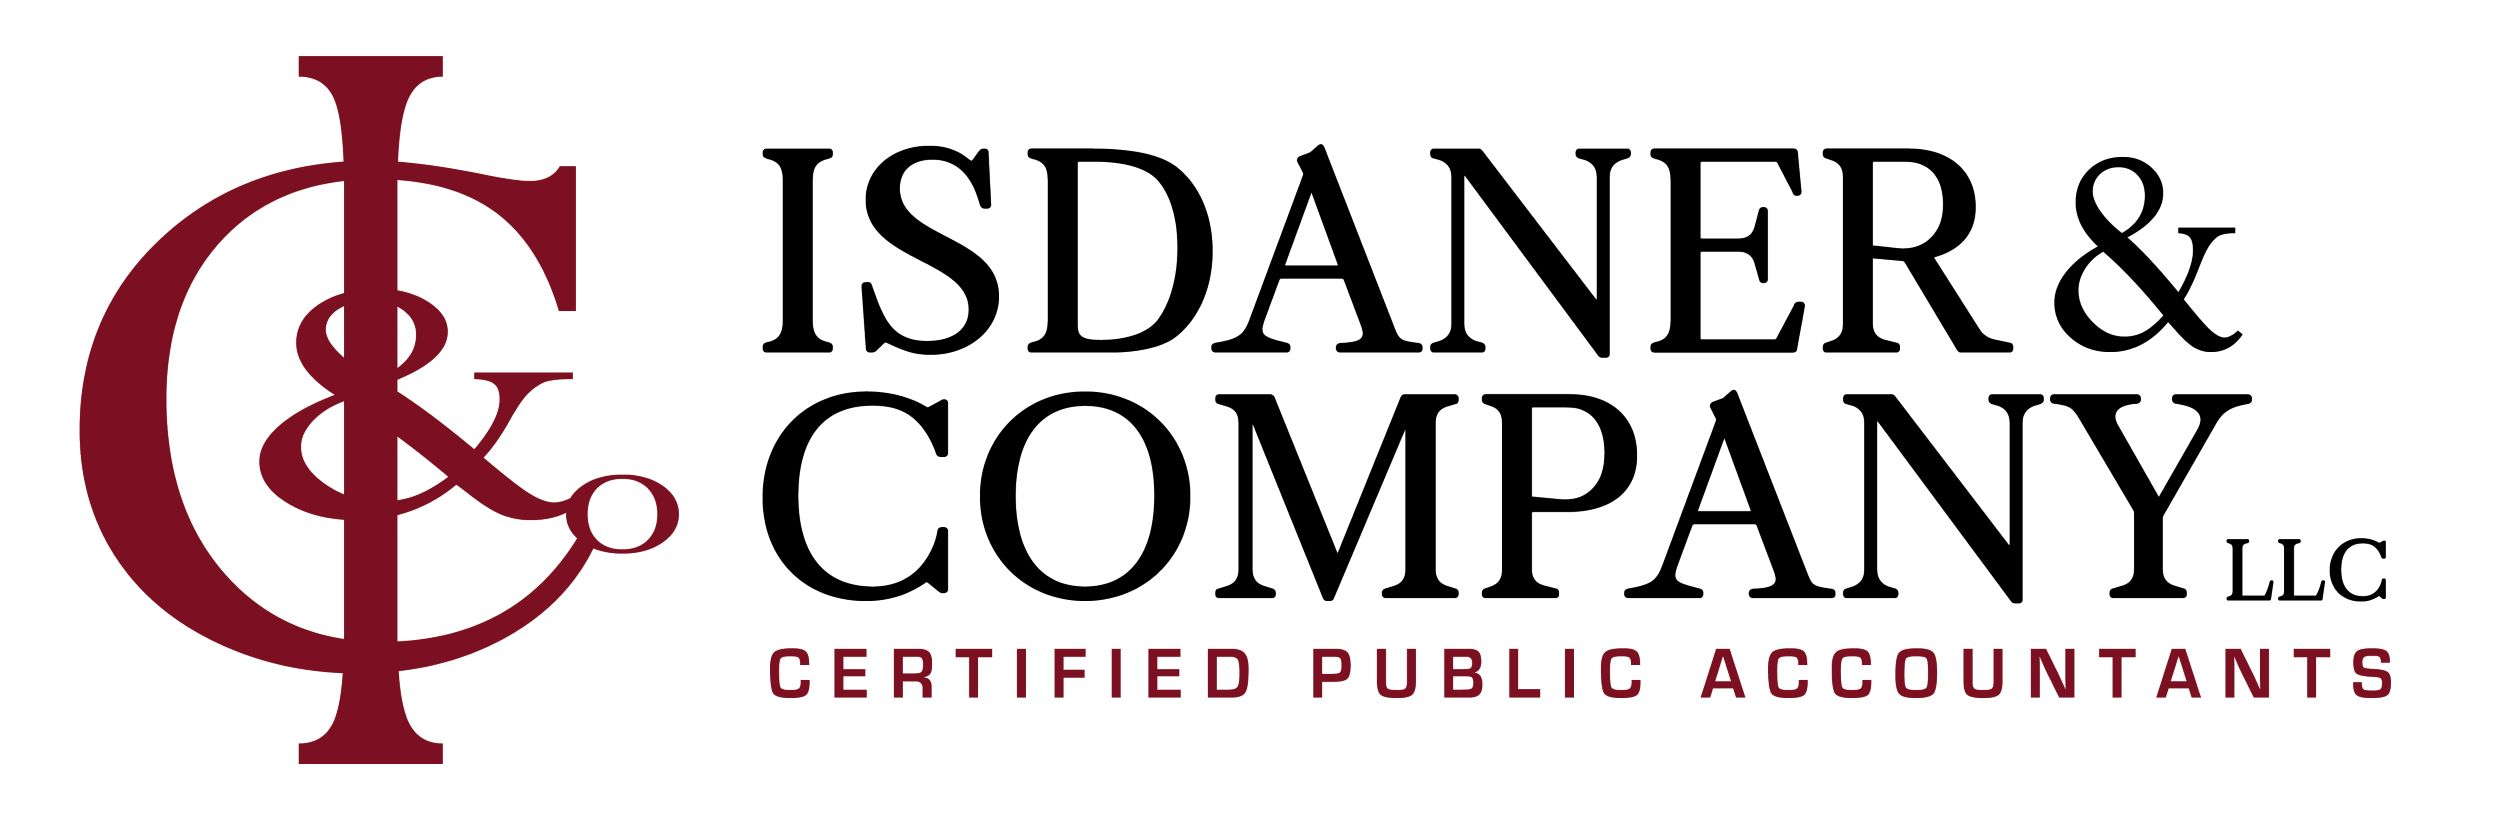 Isdaner & Company, LLC Company Logo